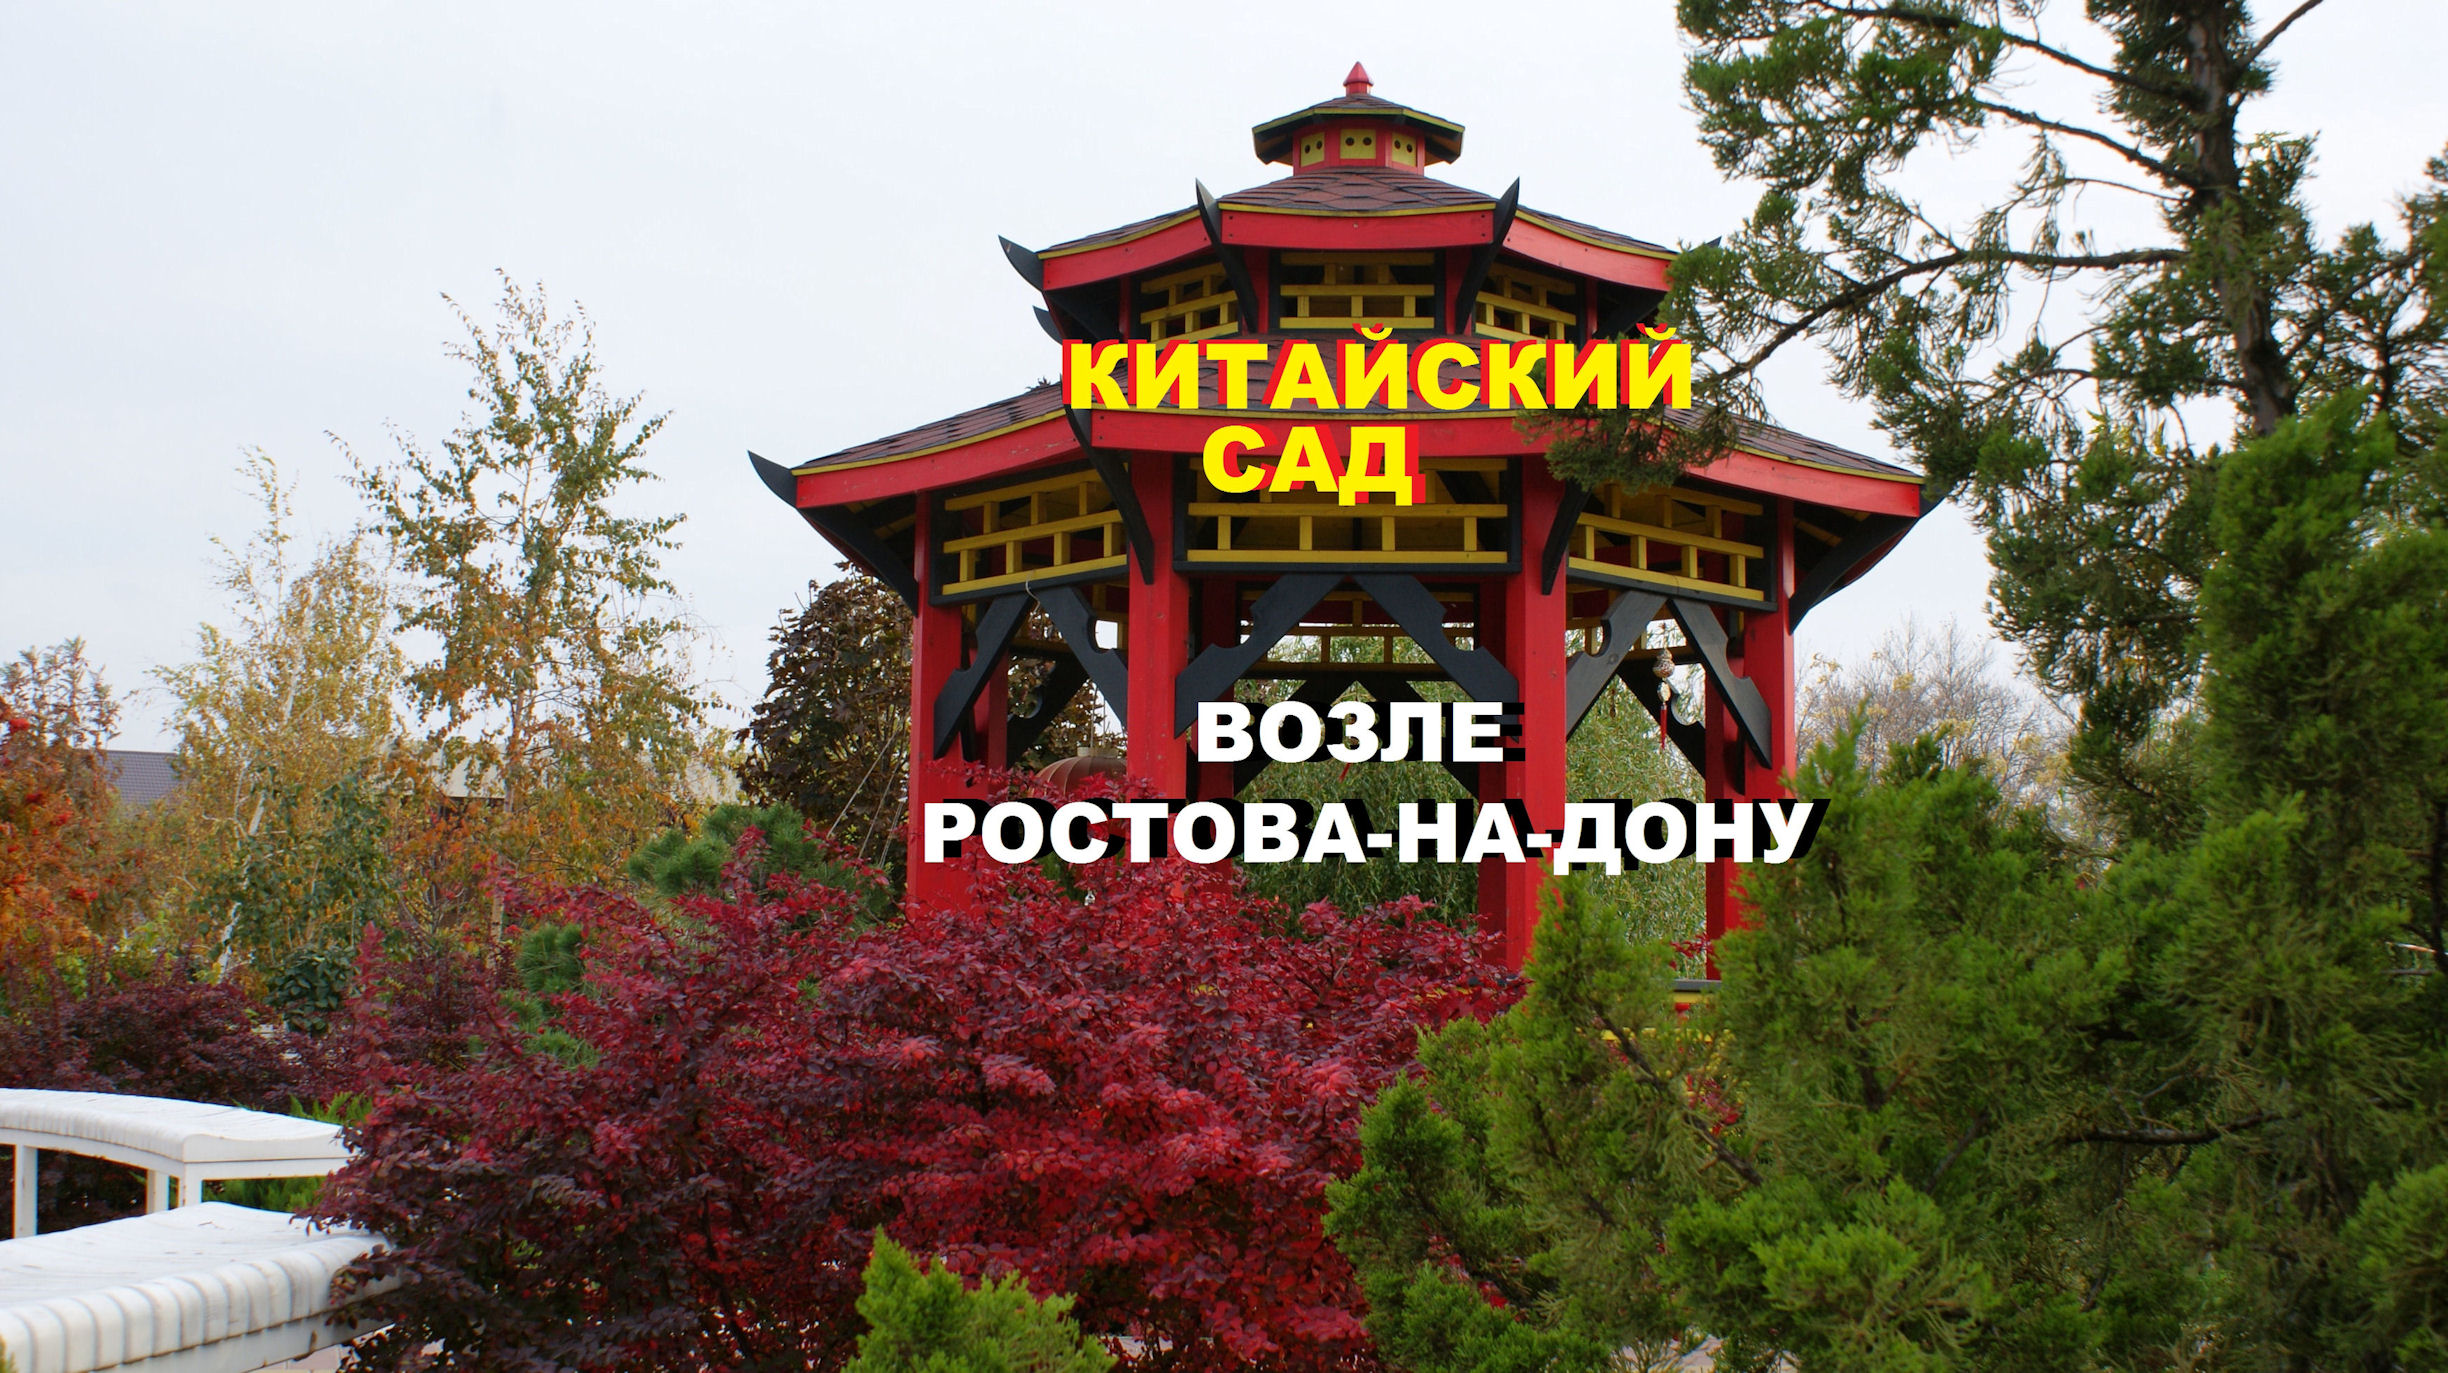 Прогулка по китайскому саду в 5 км от Ростова-на-Дону